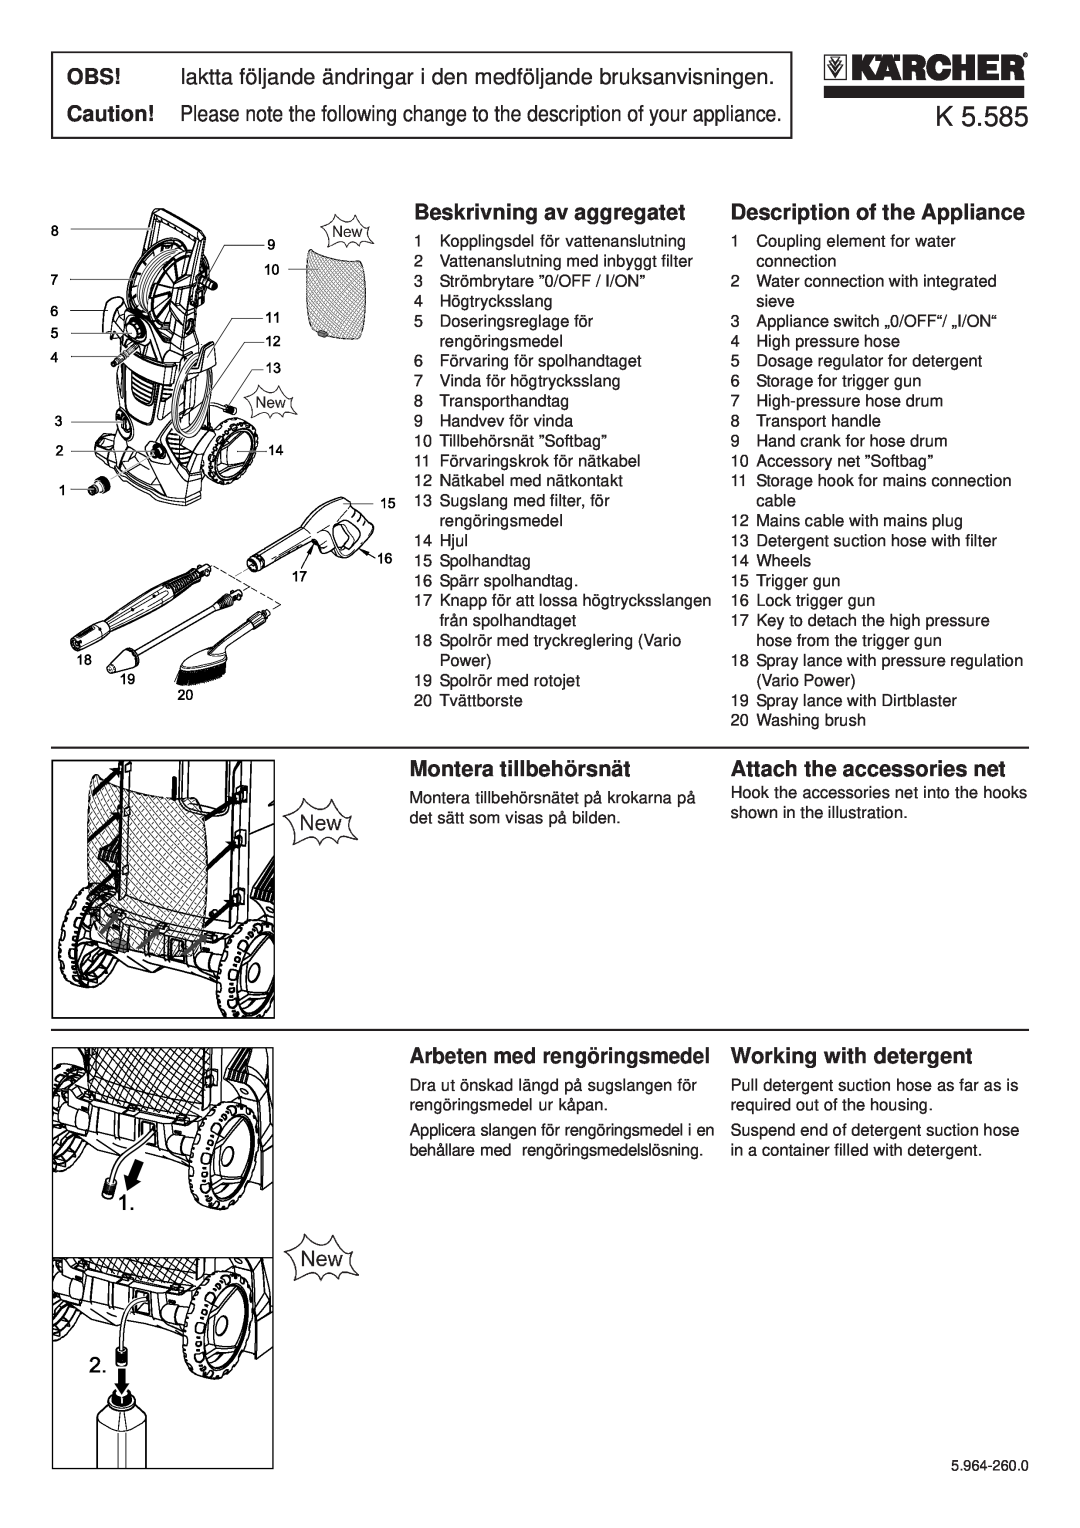 Karcher K 5.585 manual Beskrivning av aggregatet, Description of the Appliance, Montera tillbehörsnät 